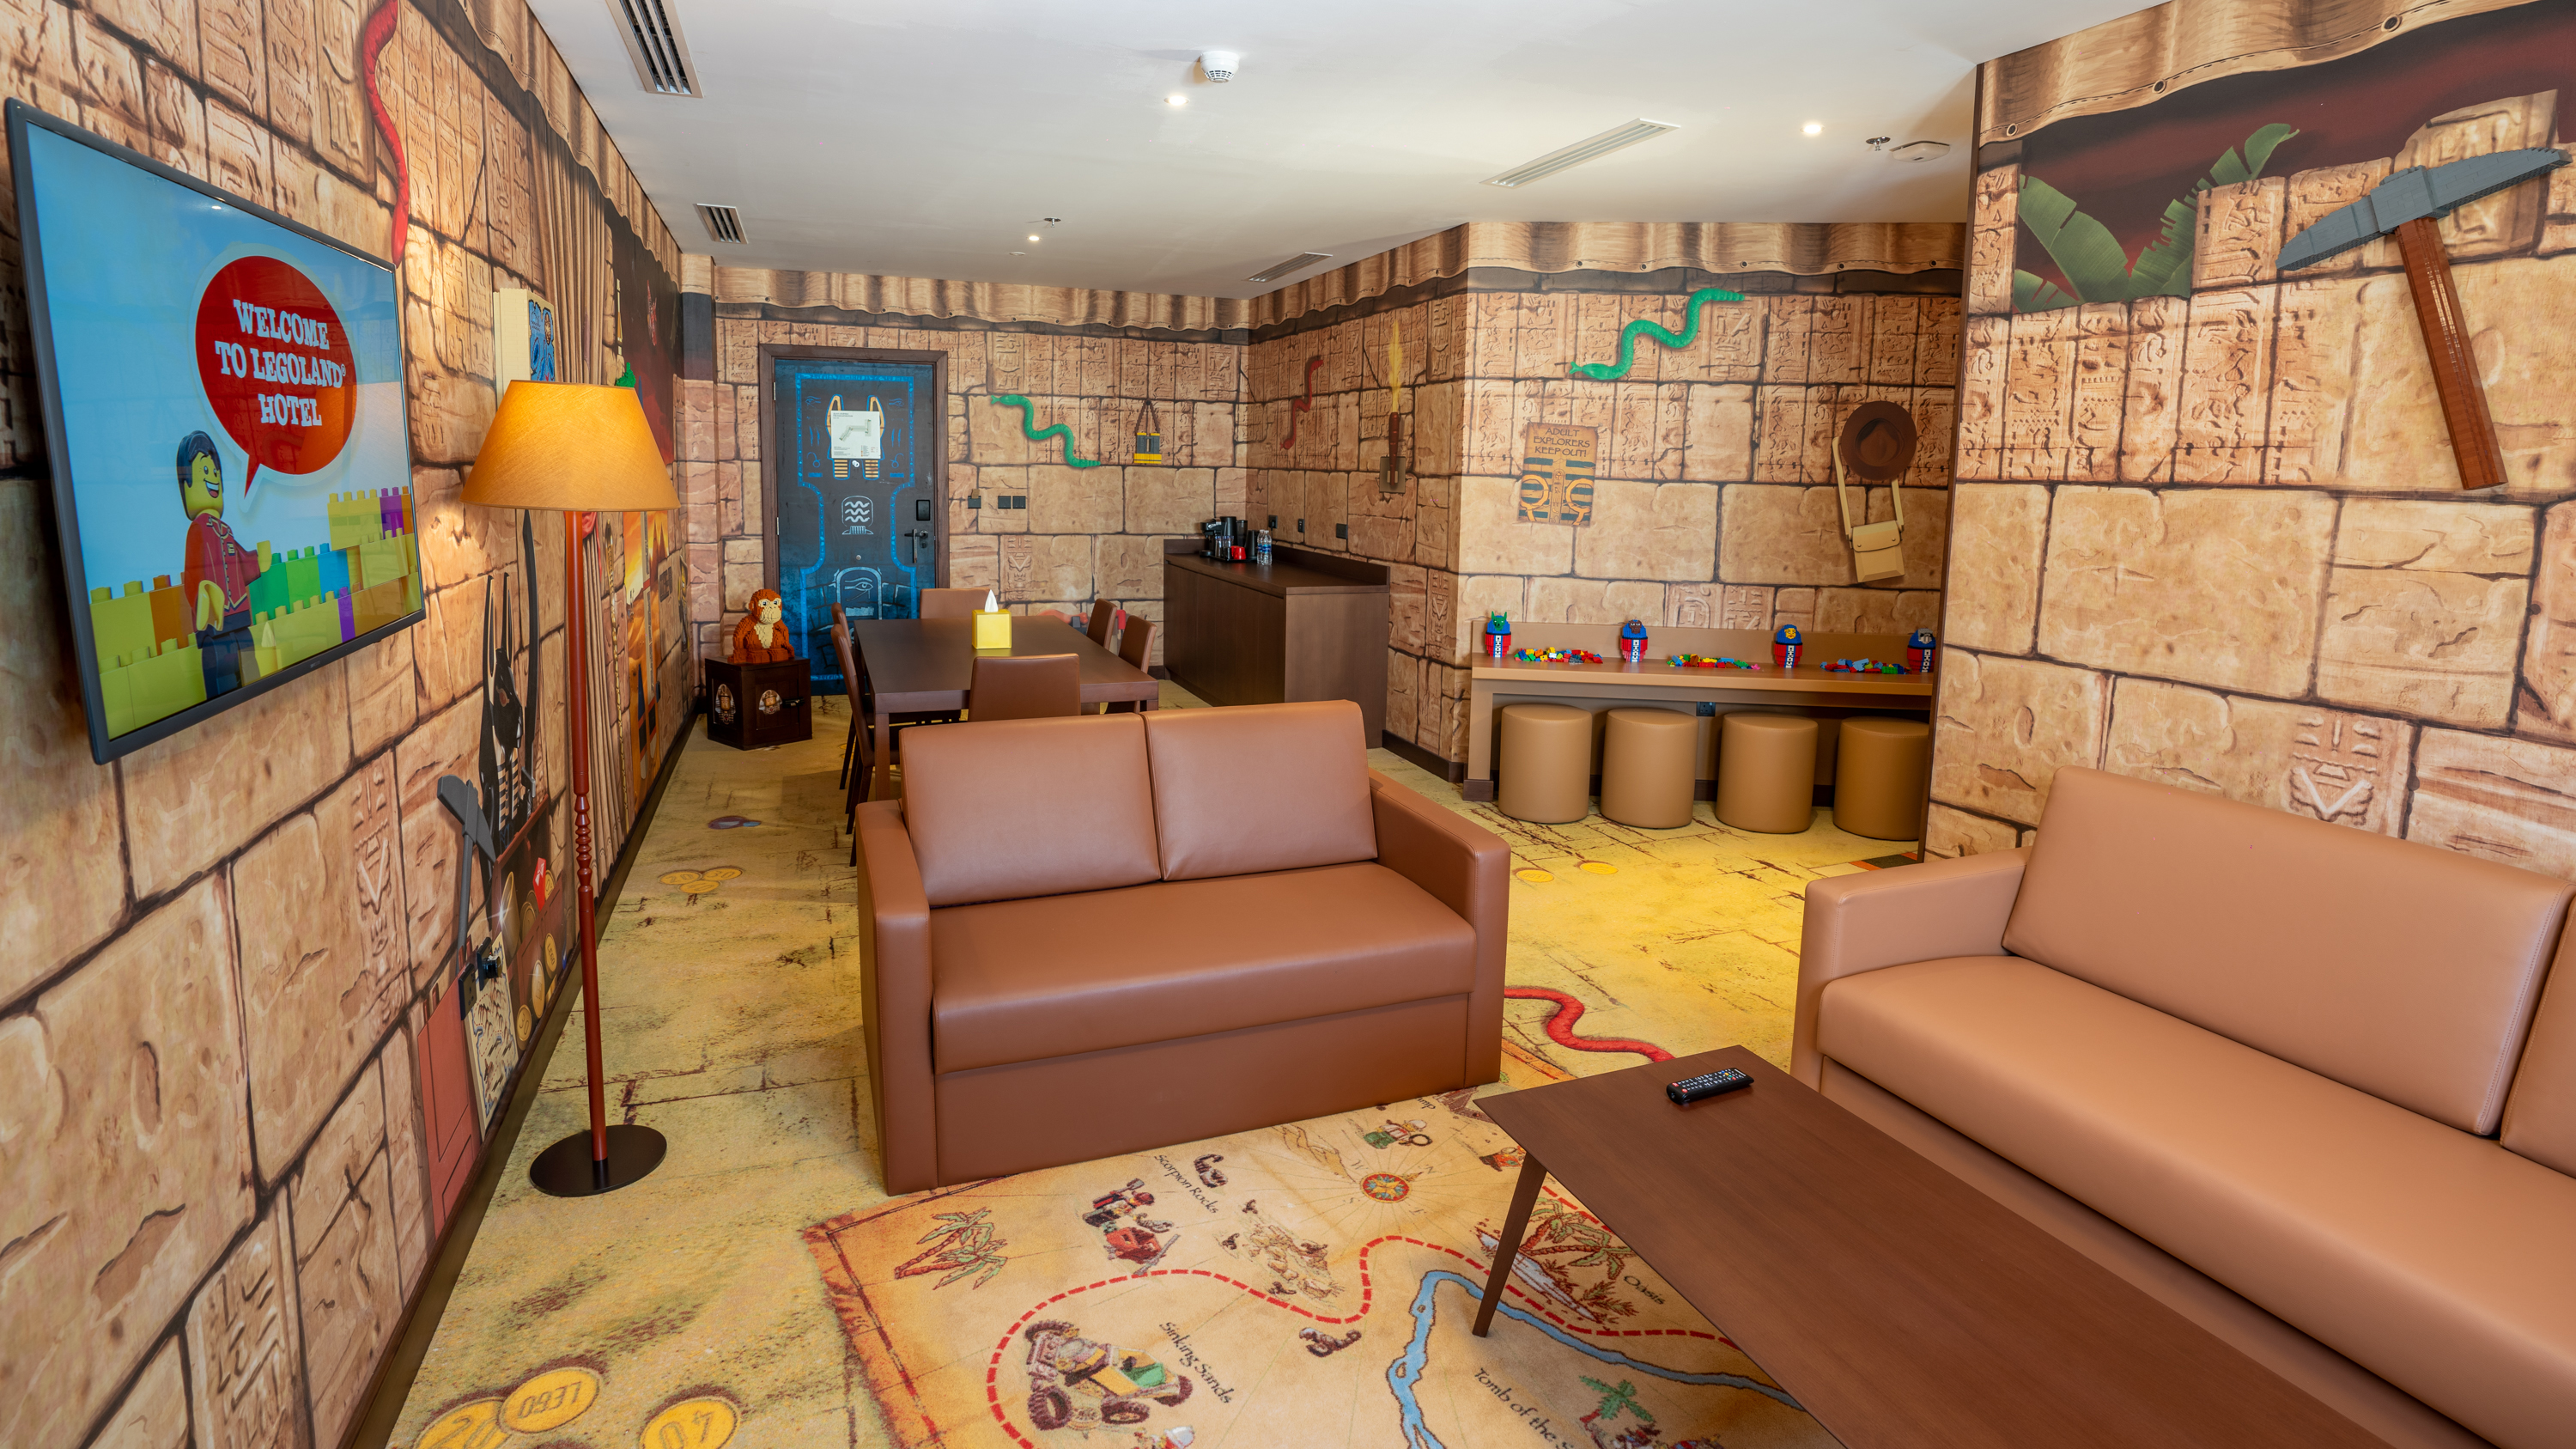 Legoland Hotel Room Interior Adventure 6(PS)